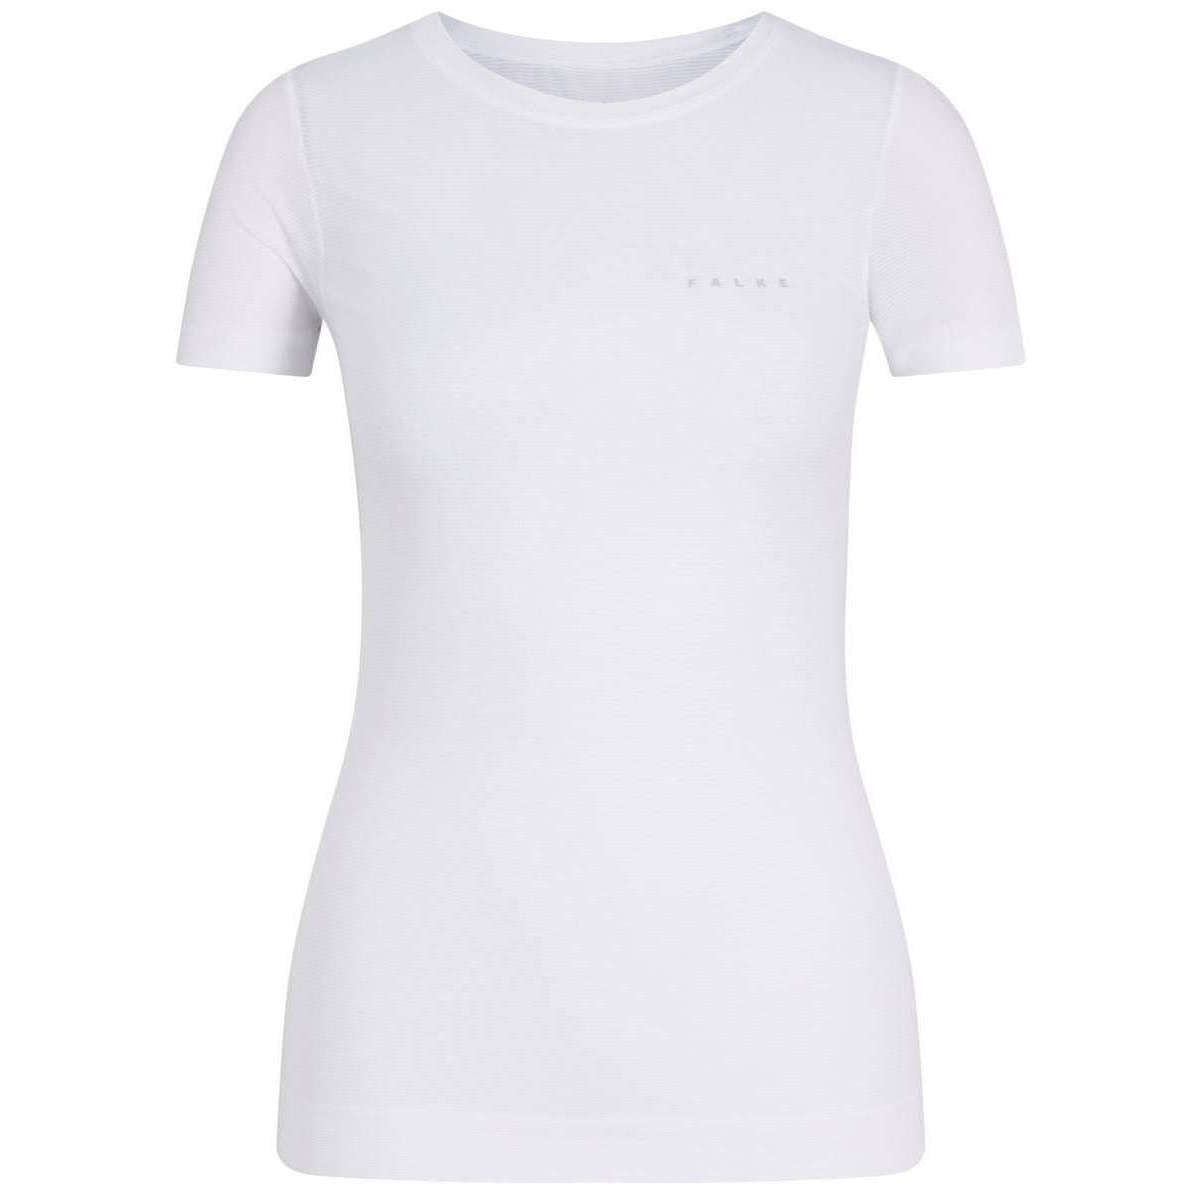 Falke Ultra-Light Cool Short Sleeved Sports Shirt - White